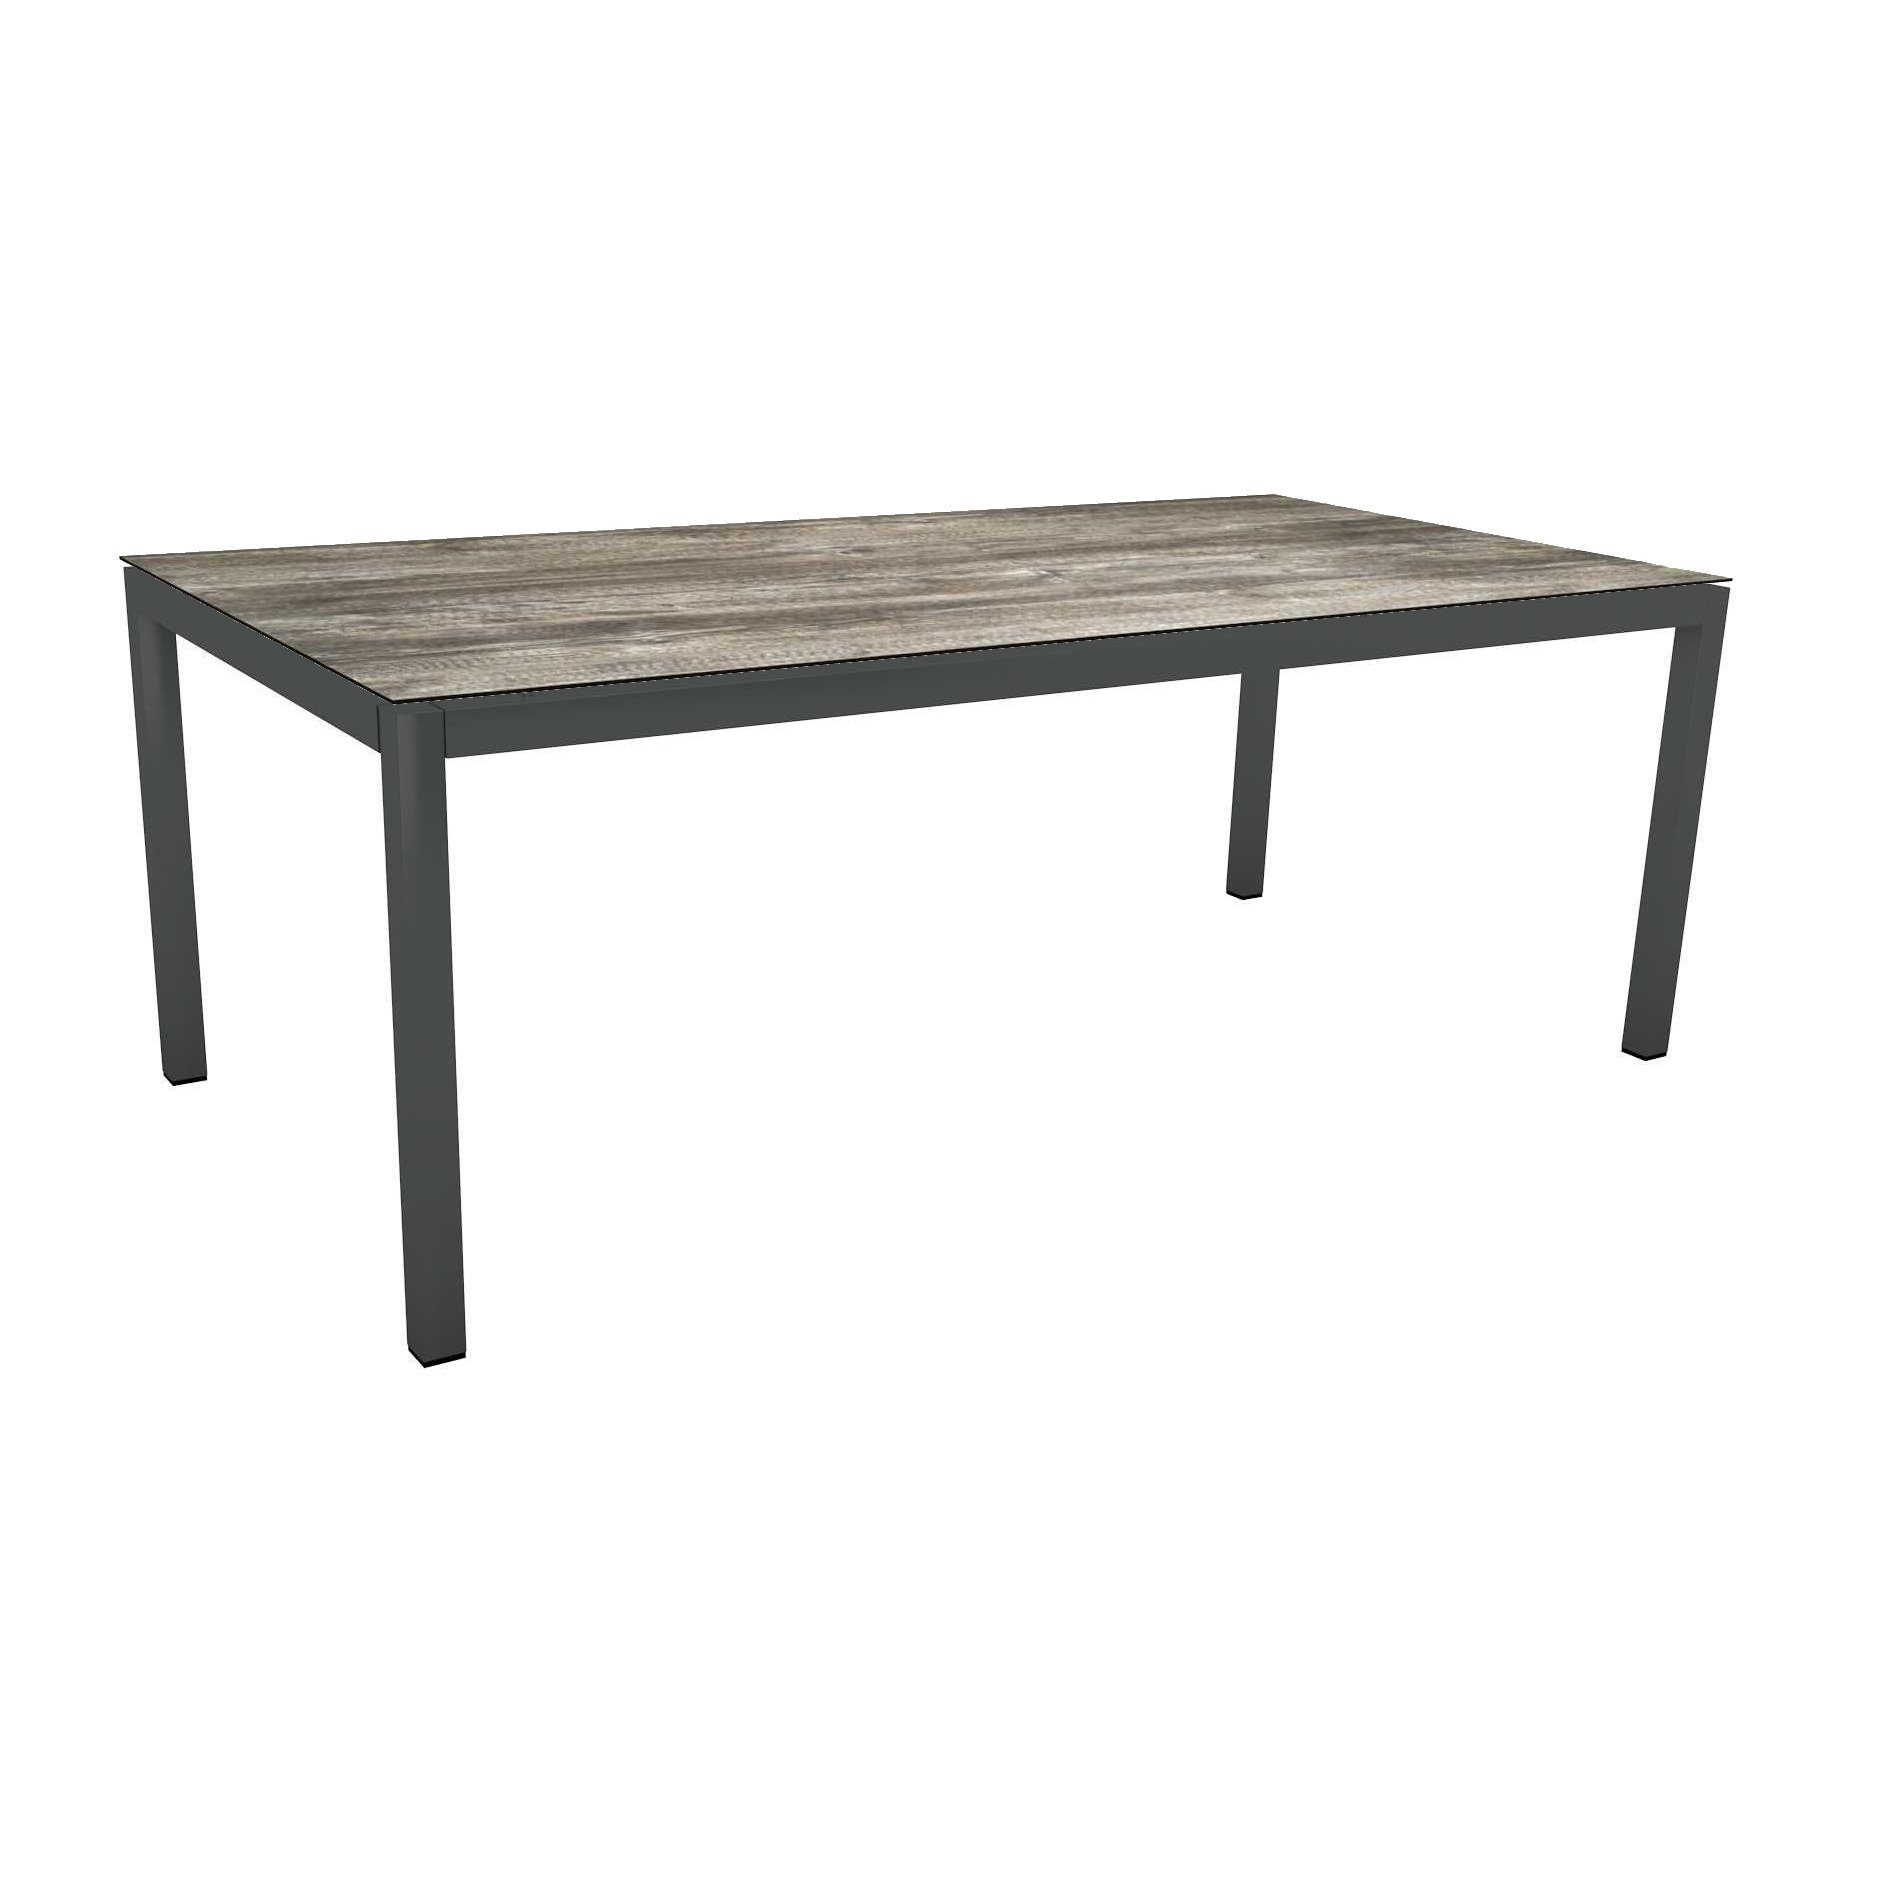 Stern Tischsystem Gartentisch, Gestell Aluminium anthrazit, Tischplatte HPL Tundra grau, Maße: 200x100 cm